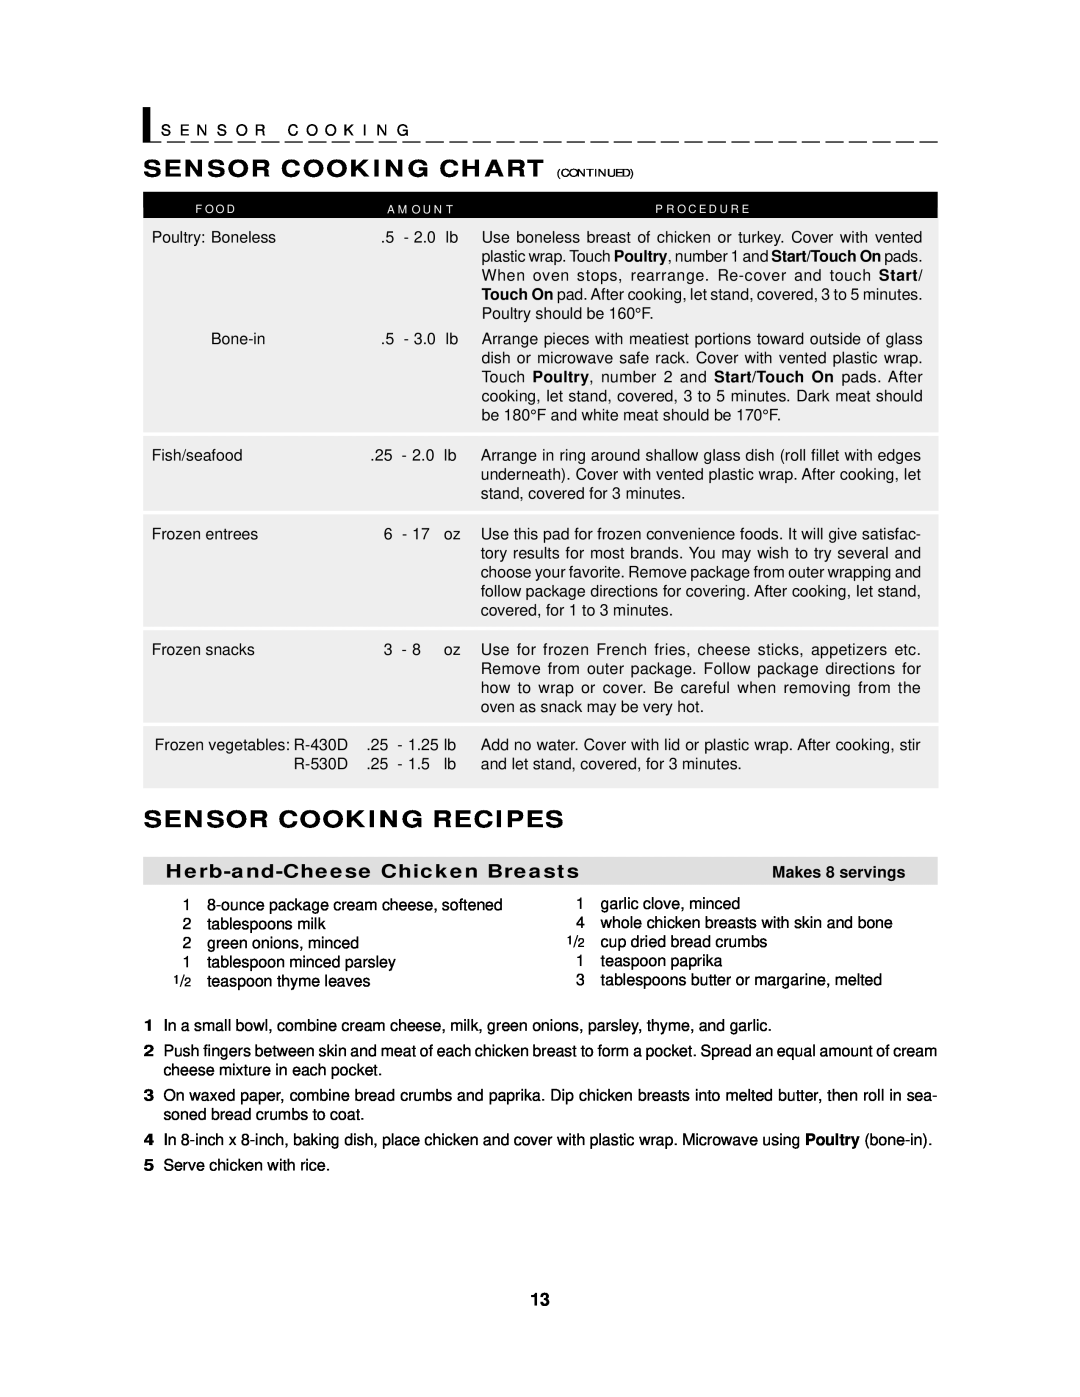 Sharp R-430D Sensor Cooking Chart Continued, Sensor Cooking Recipes, S E N S O R C O O K I N G, F O O D, P R O C E D U R E 